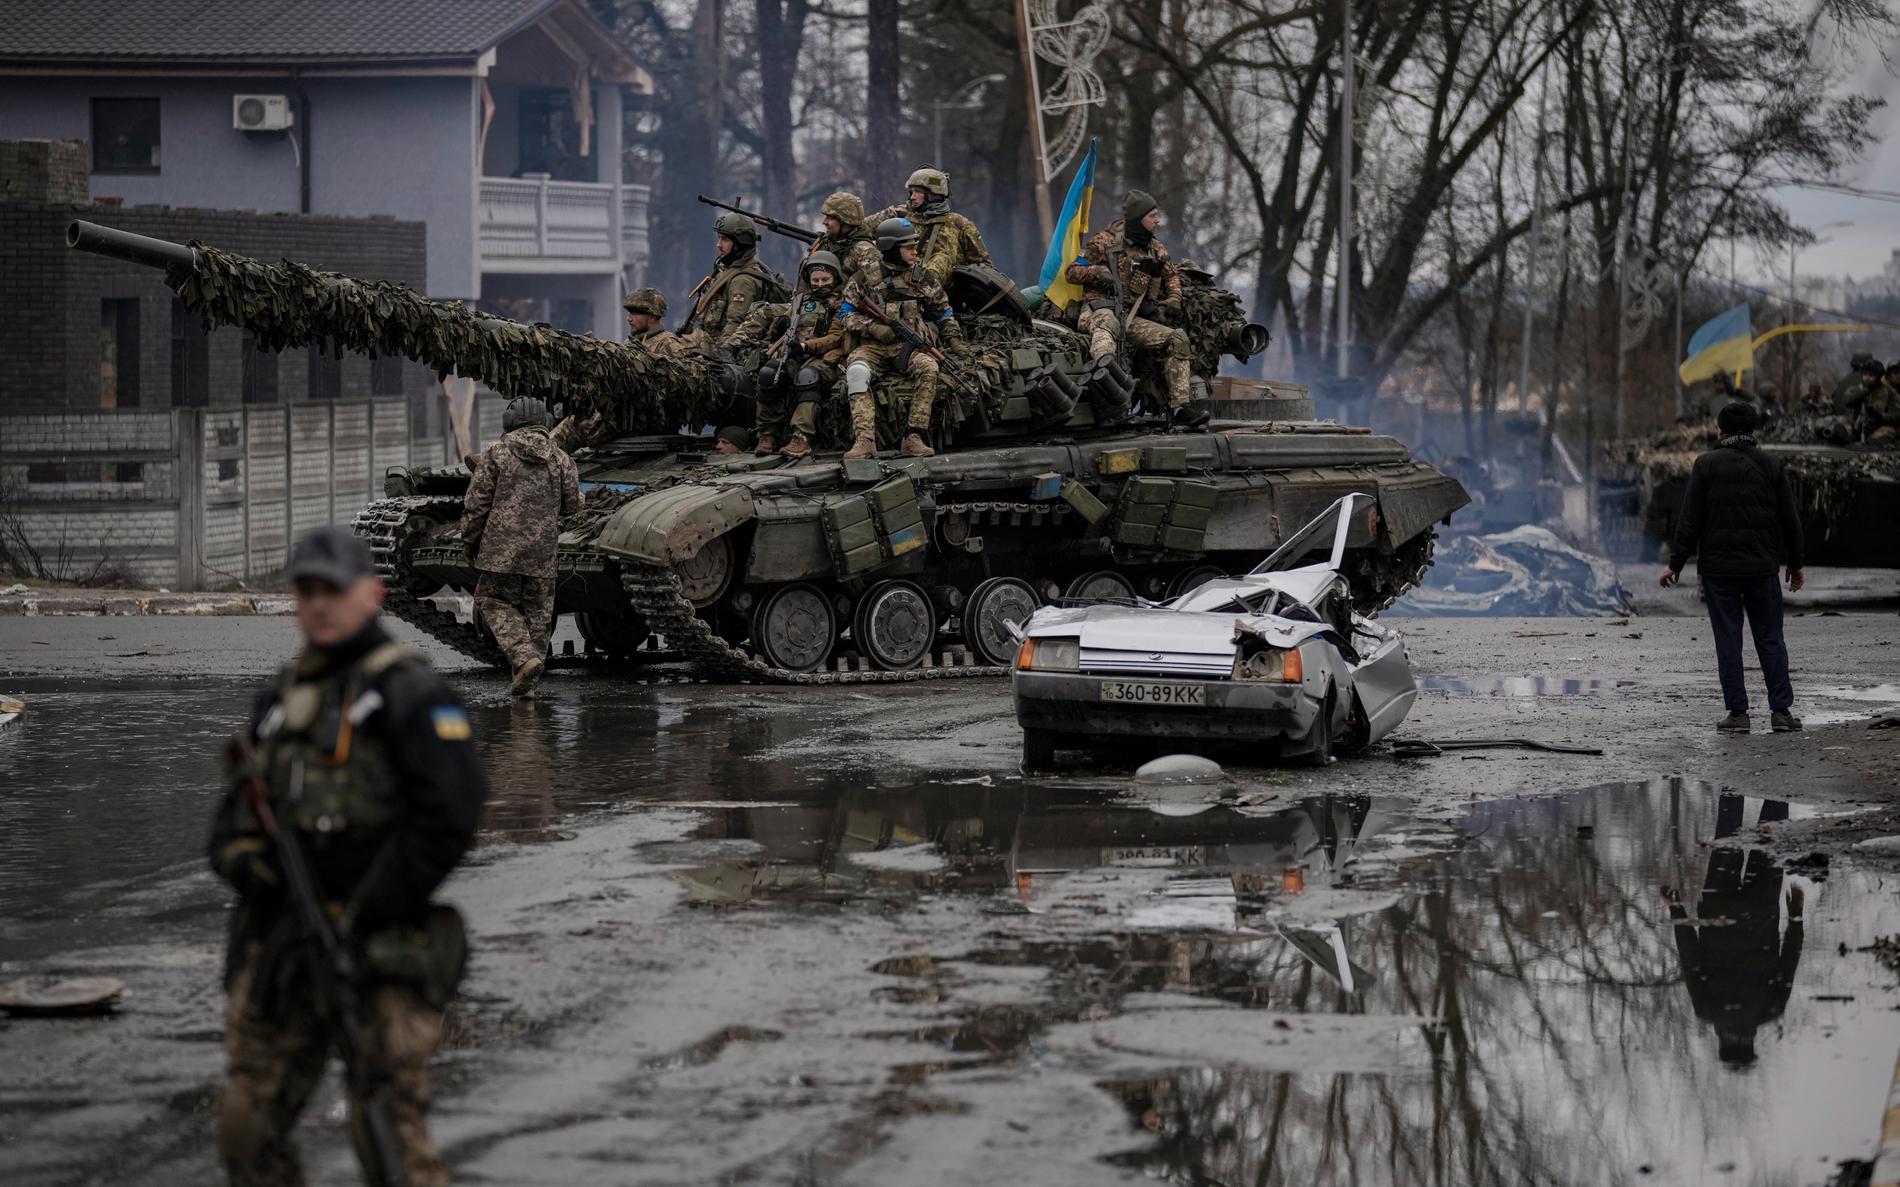 Ukrainska armén befarar att ryska trupper lagt minor i bostäder och på kvarlevor. Soldaterna vågar inte gå nära kropparna, eftersom de kan vara minerade.